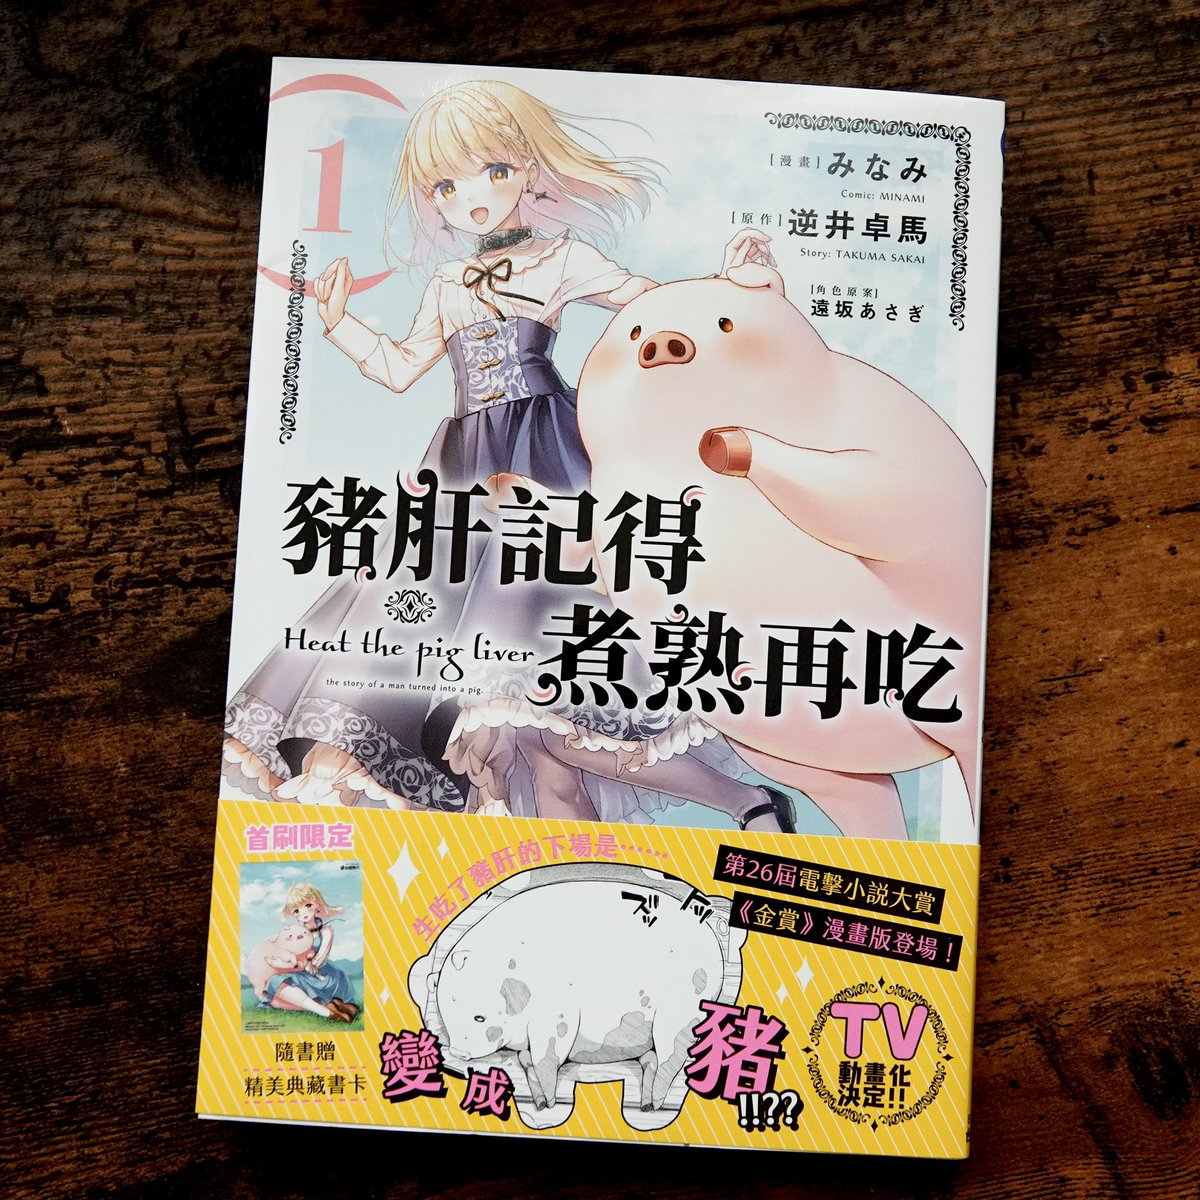 豚レバコミックス台湾版1巻が届きました!
みなみ先生(@mnmmrn)の素晴らしい漫画を海外の方にも読んでいただけるのは本当に嬉しいことですね…… 